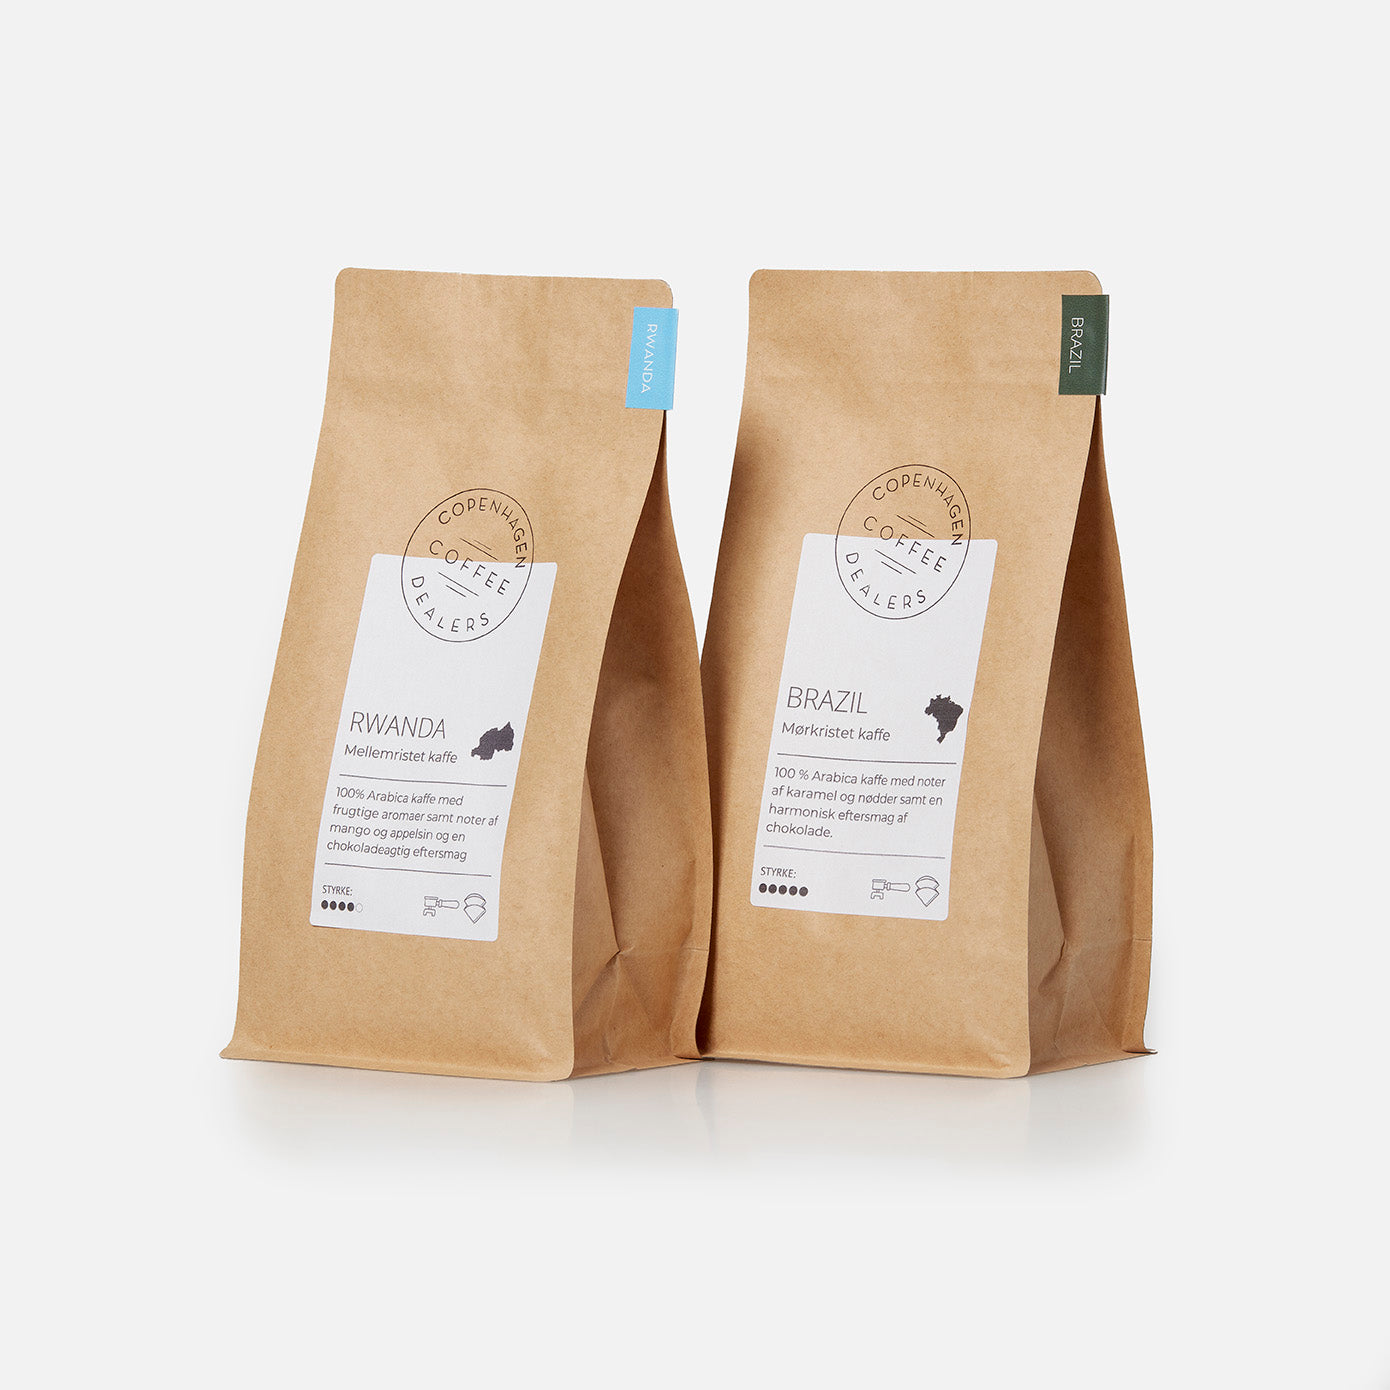 Nyd vores 2x500g kaffepakke, der kombinerer det bedste fra Rwandas og Brasiliens kaffeverdener, ideel for dem, der elsker variation